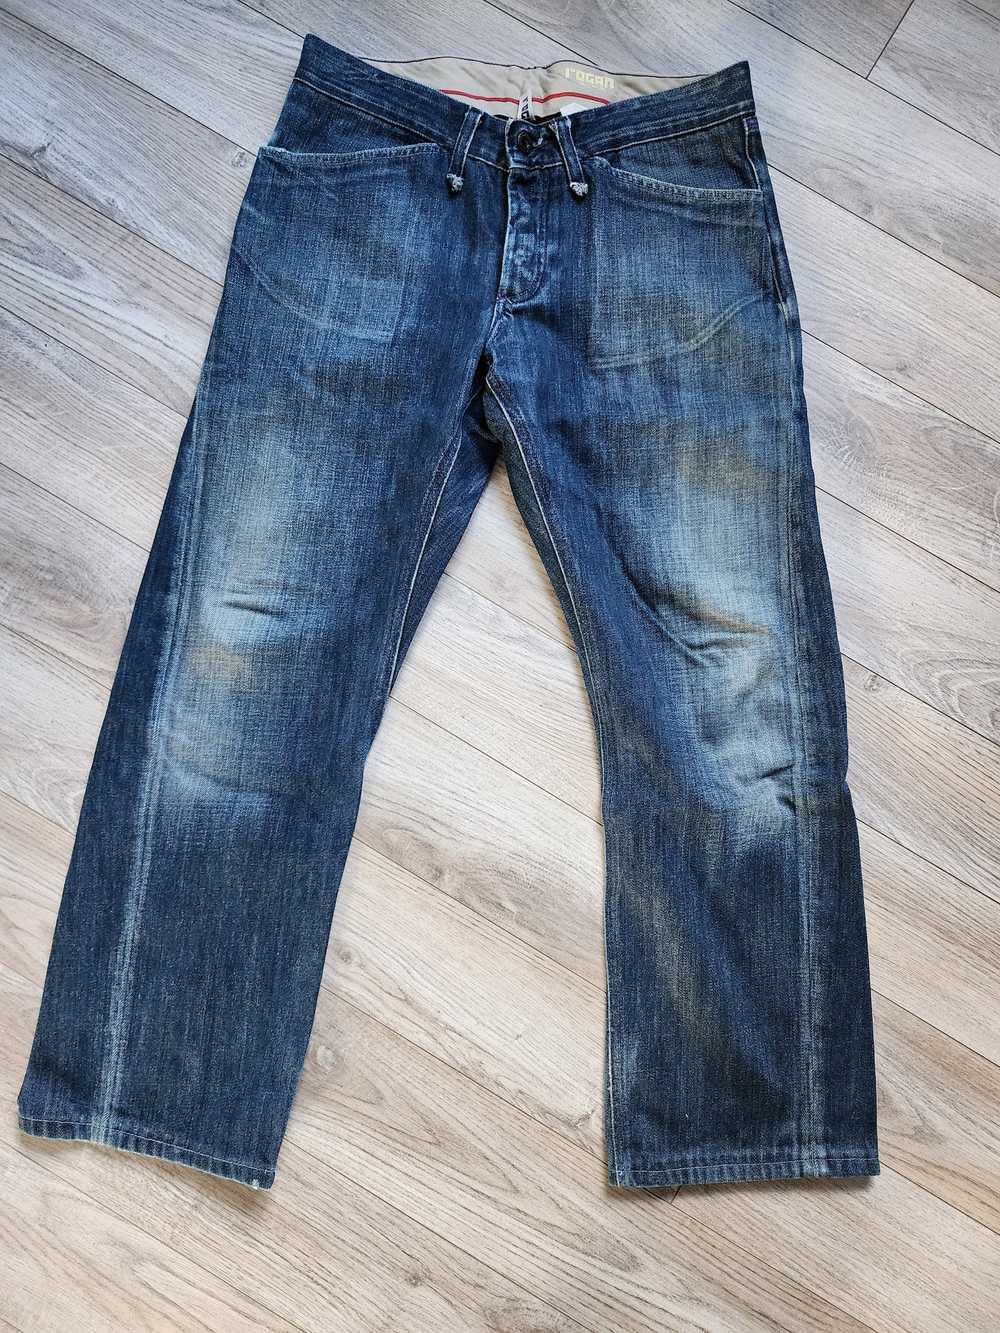 Rogan Rogan Denim Jeans - image 1